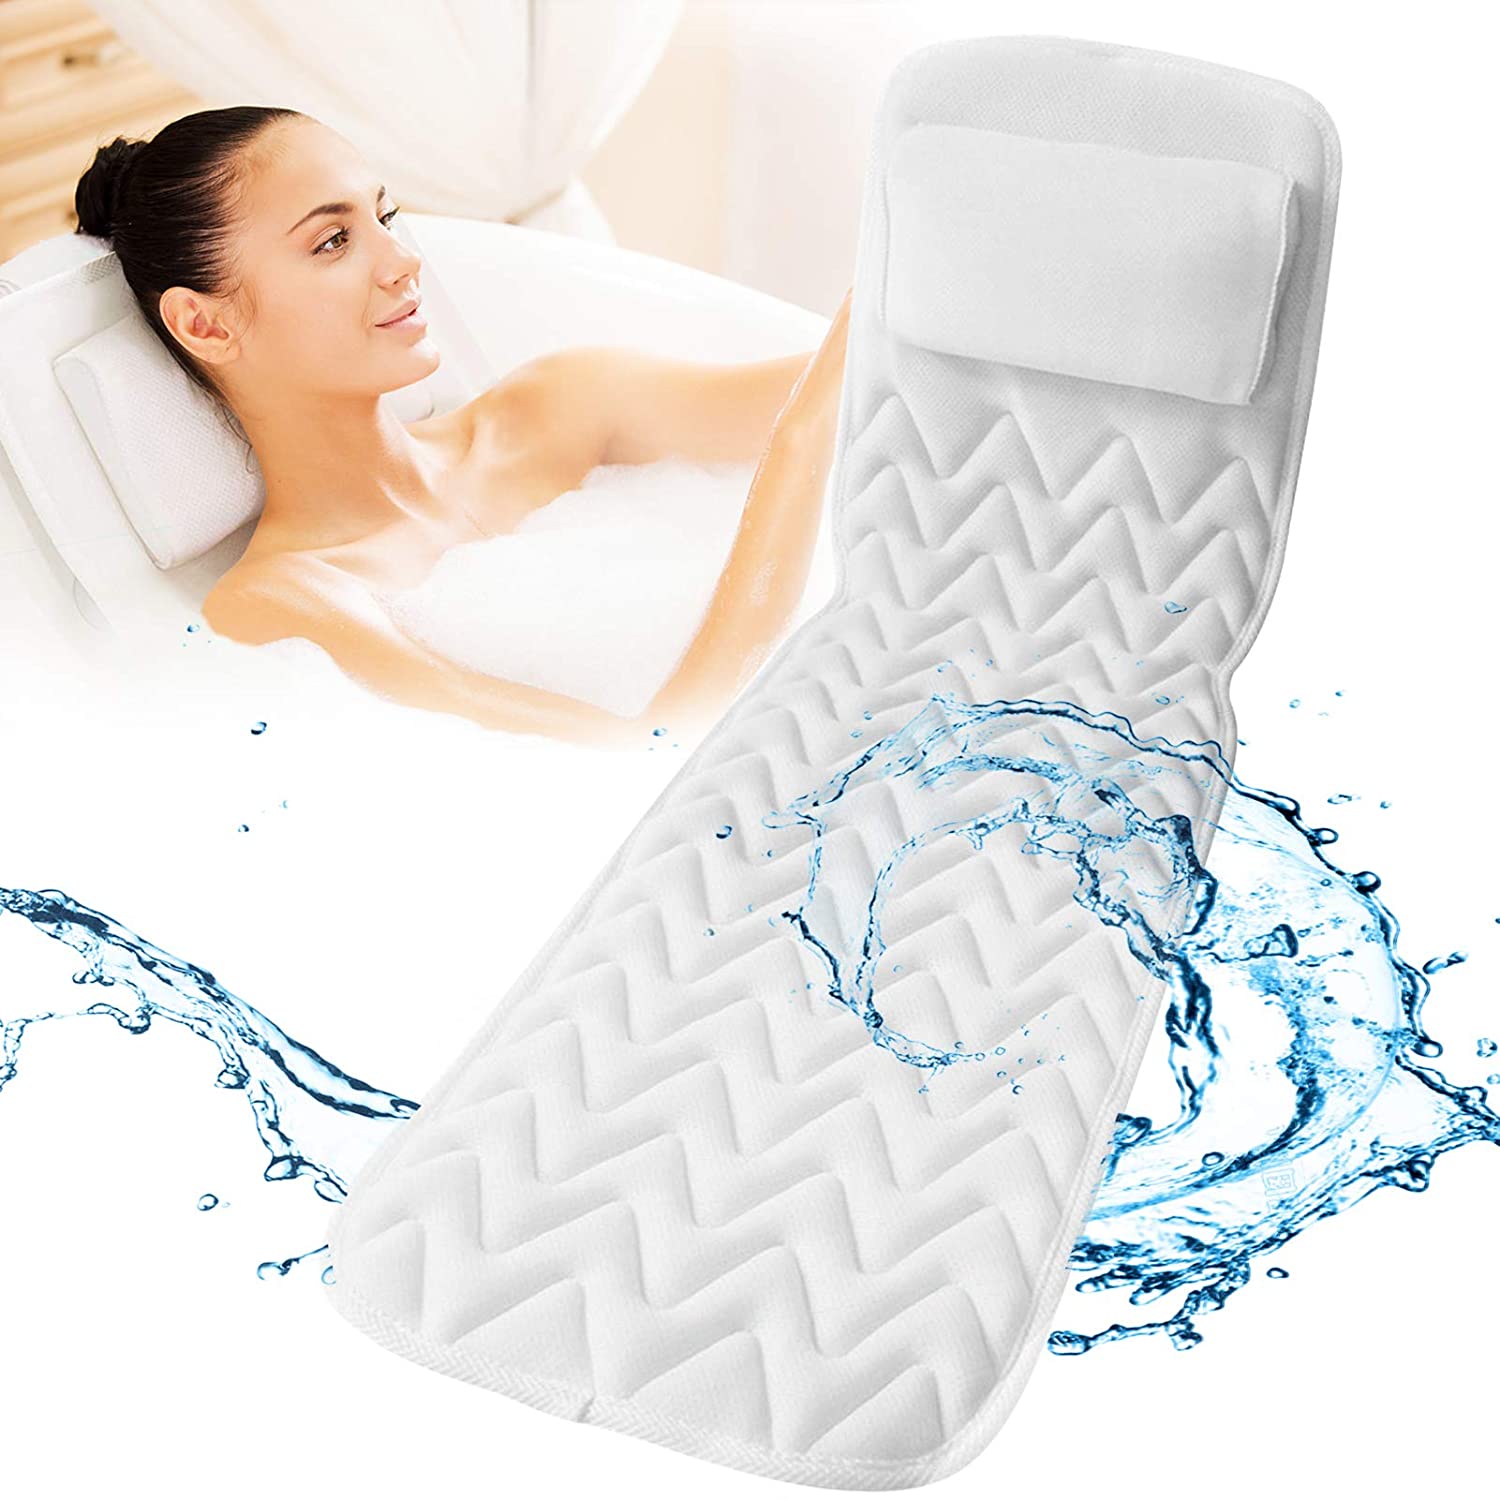 bath pillows for tub